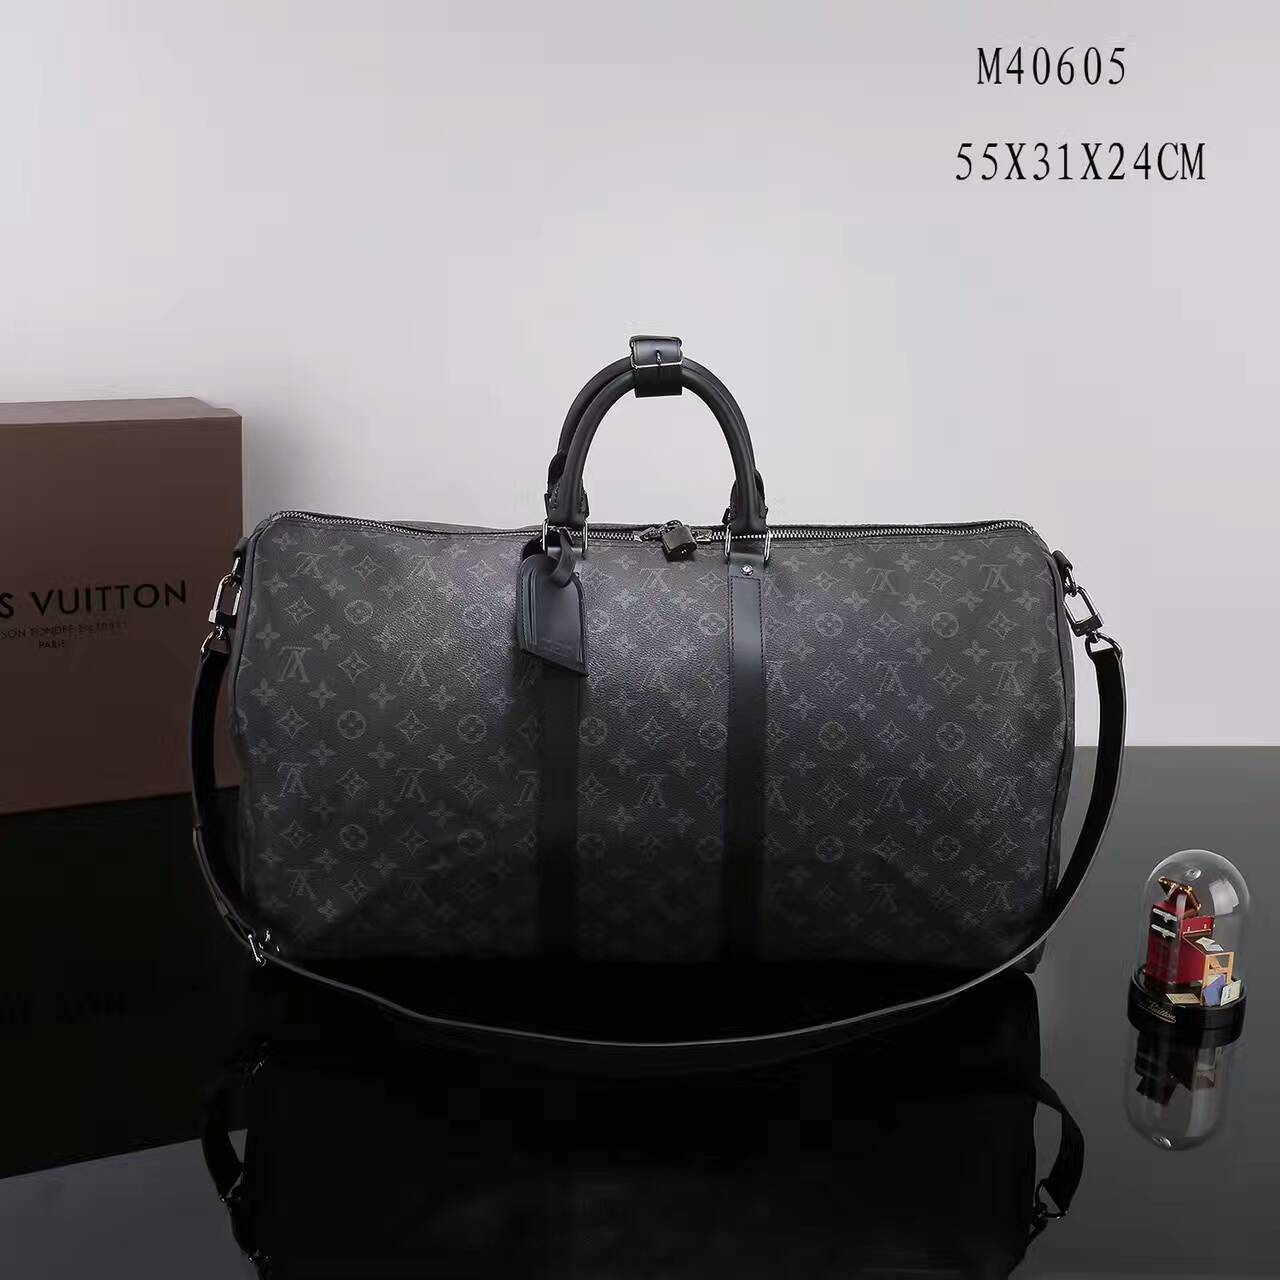 Louis Vuitton Keepall 55CM bandoulière-M40605-LV50497